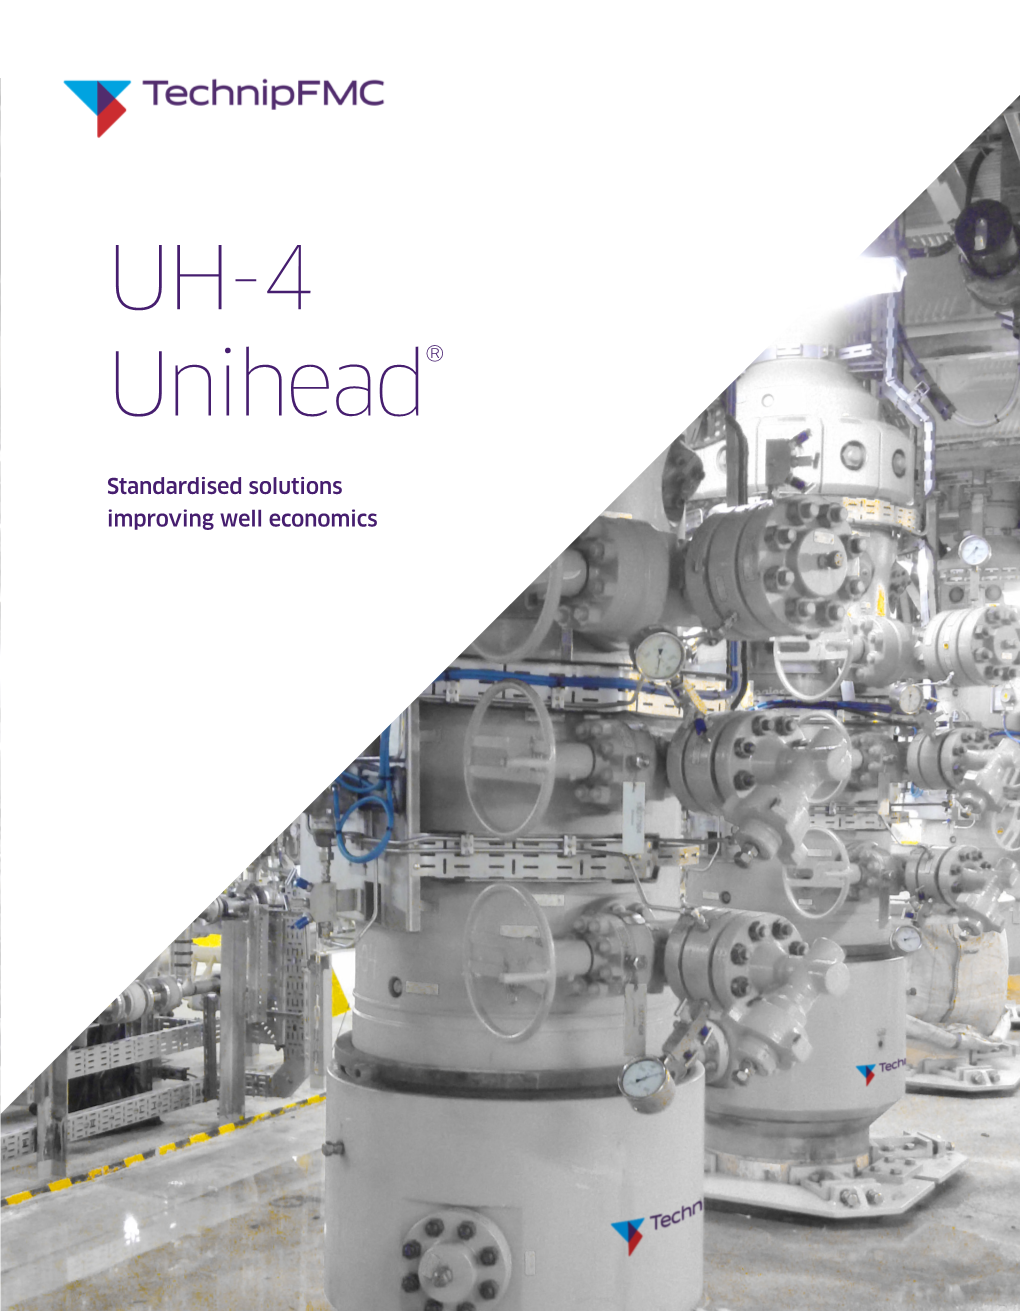 UH-4 Uniheadunihead®®